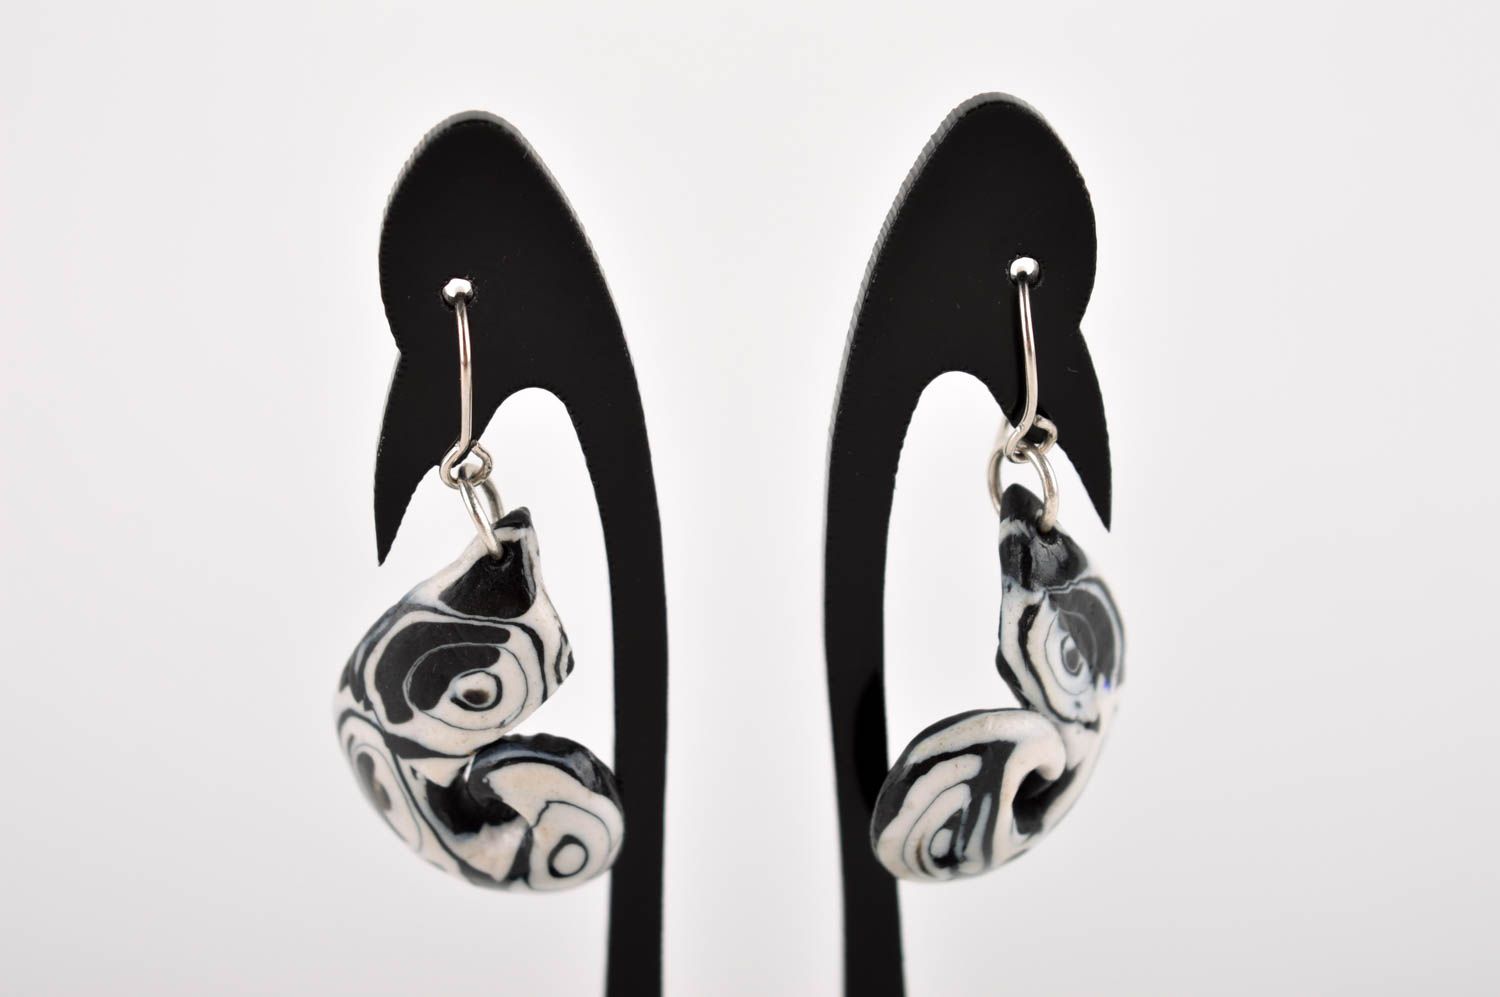 Stylish handmade plastic earrings homemade earrings design accessories for girls photo 2